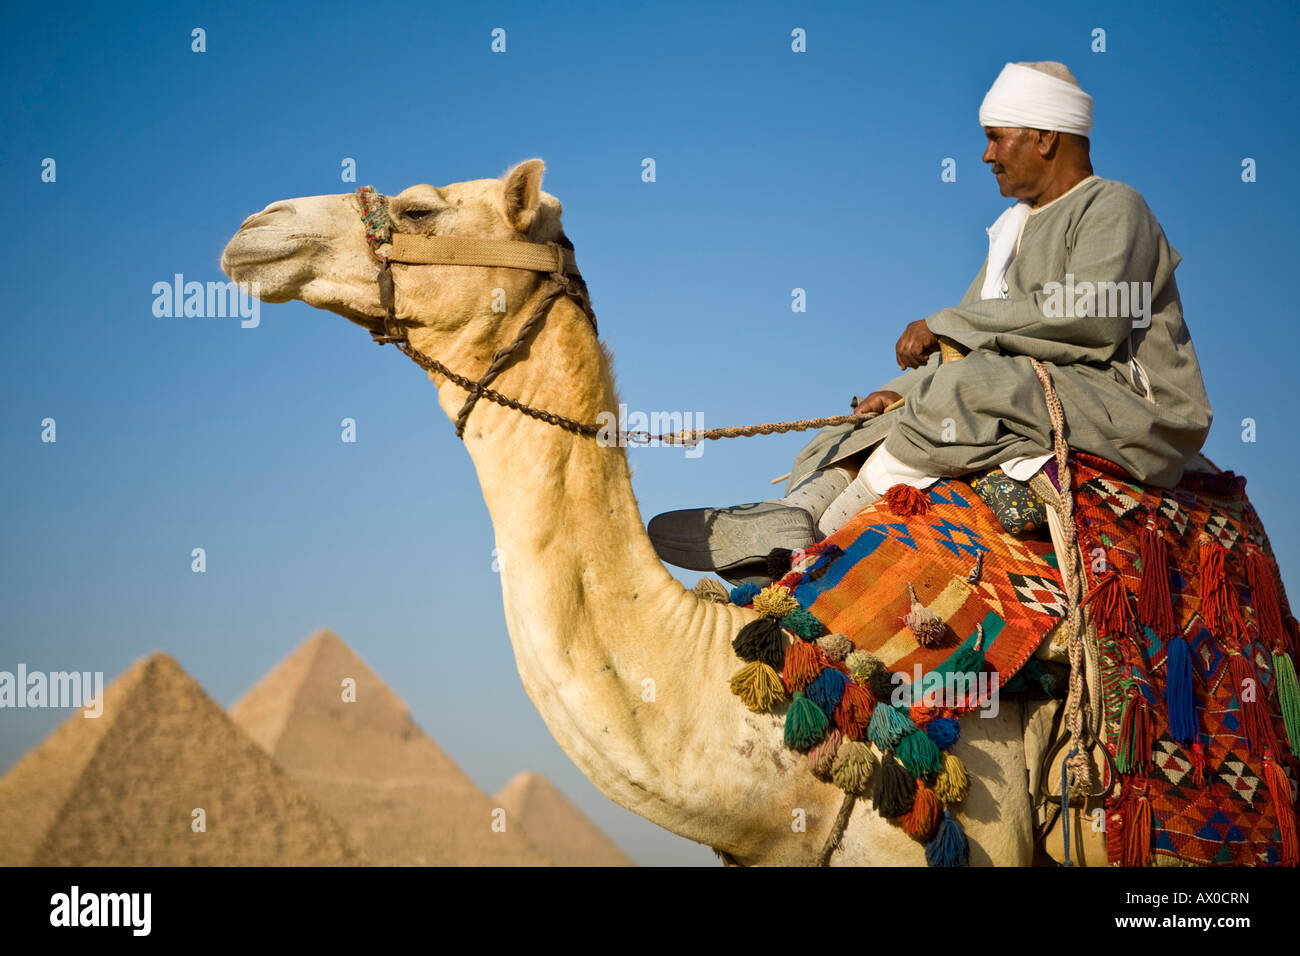 Camel & driver presso le Piramidi di Giza, il Cairo, Egitto Foto Stock